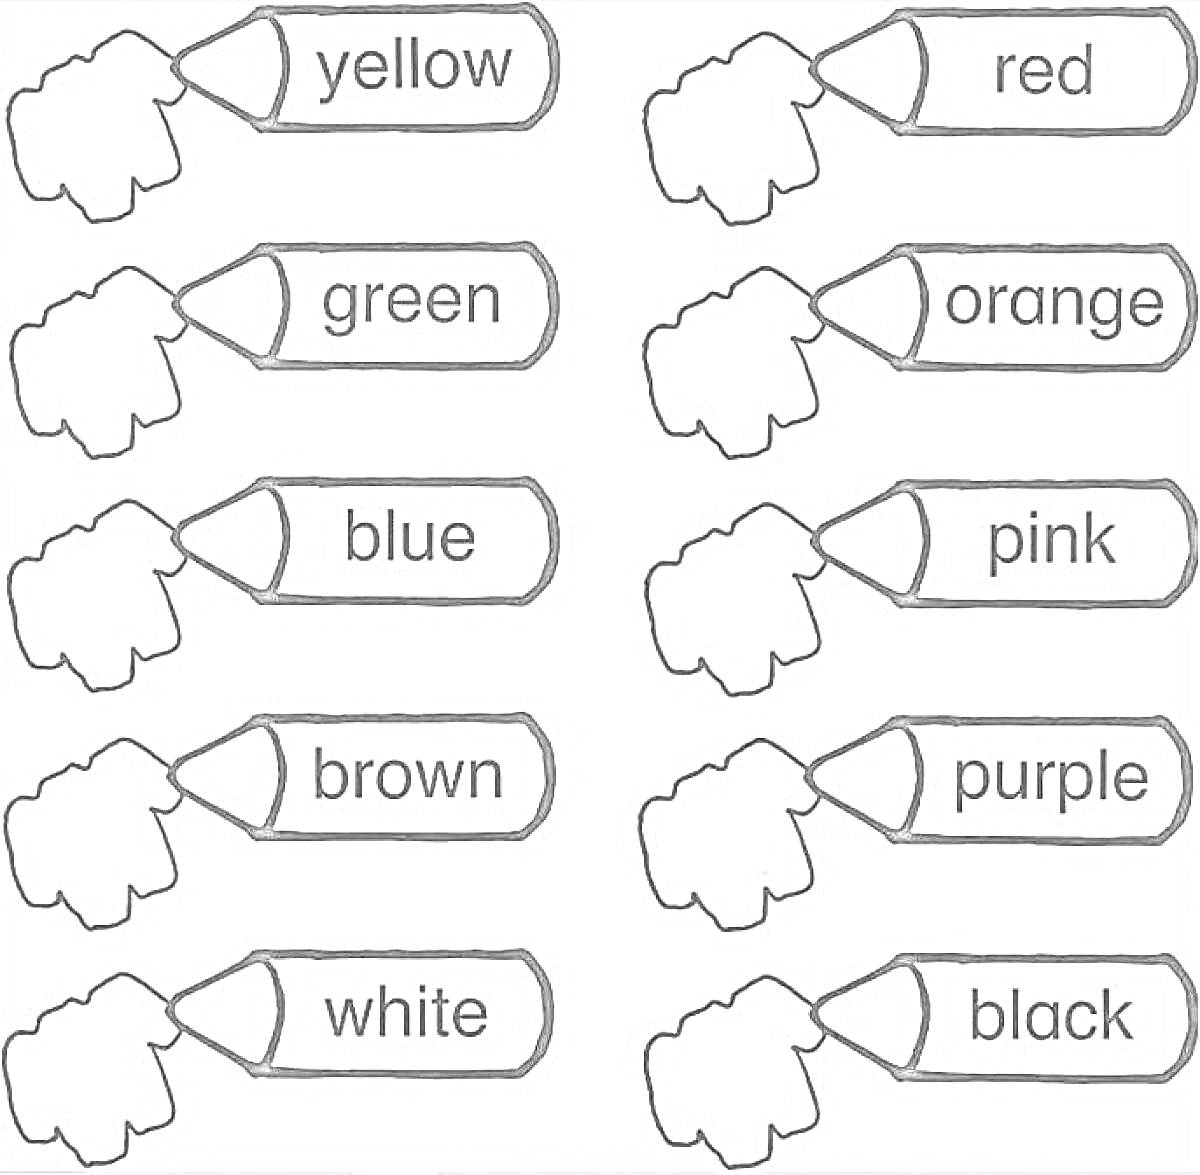 Раскраска Рисунок с карандашами и названиями цветов на английском языке (yellow, red, green, orange, blue, pink, brown, purple, white, black)